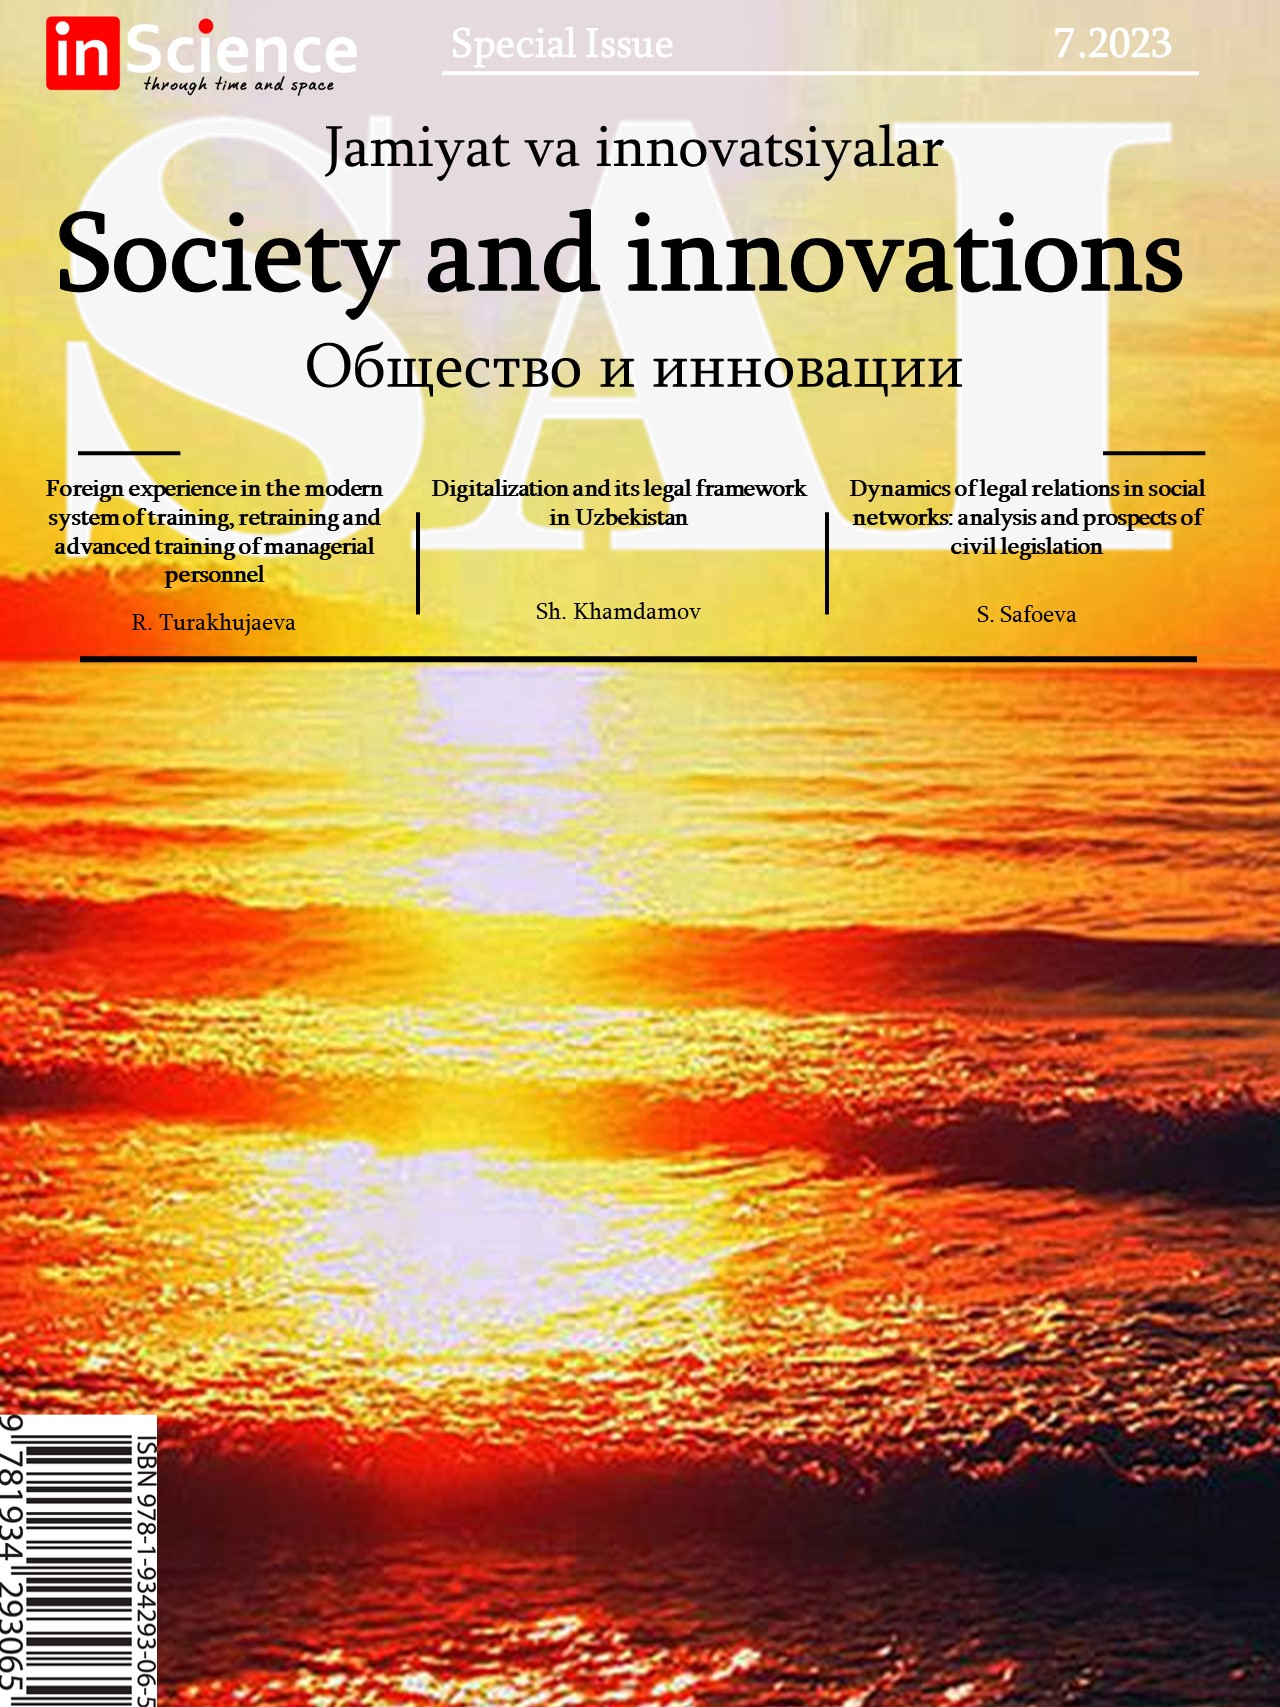 						Показать Том 4 № 6/S (2023): Спецвыпуск междисциплинарного электронного научного журнала «Общество и инновации»
					